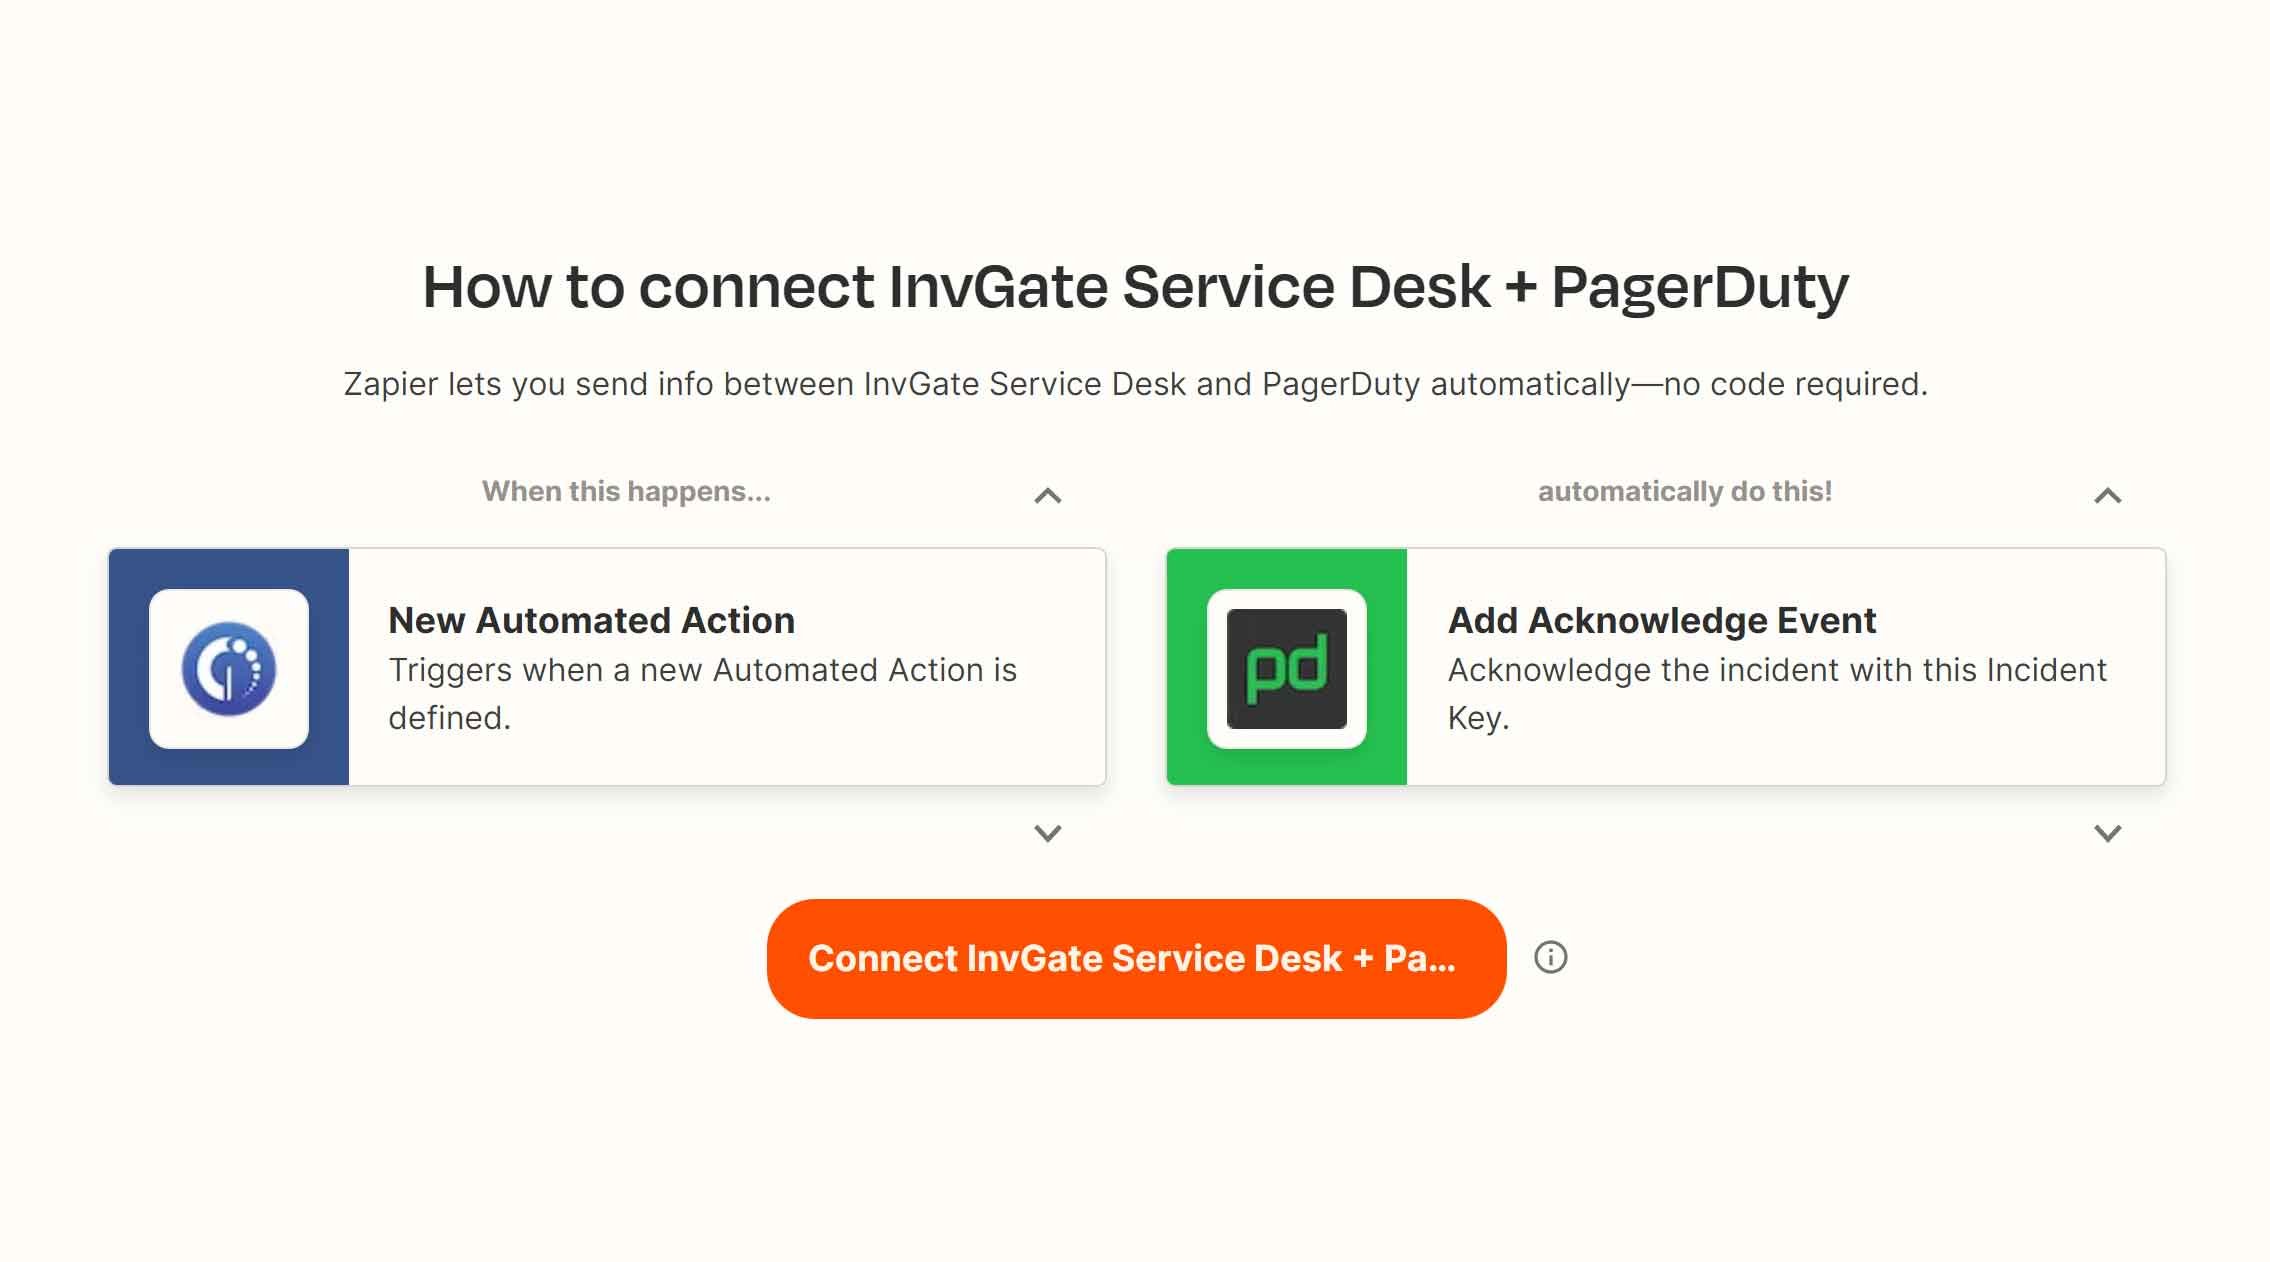 Integraciones de Zapier: integra InvGate Service Desk con PagerDuty.